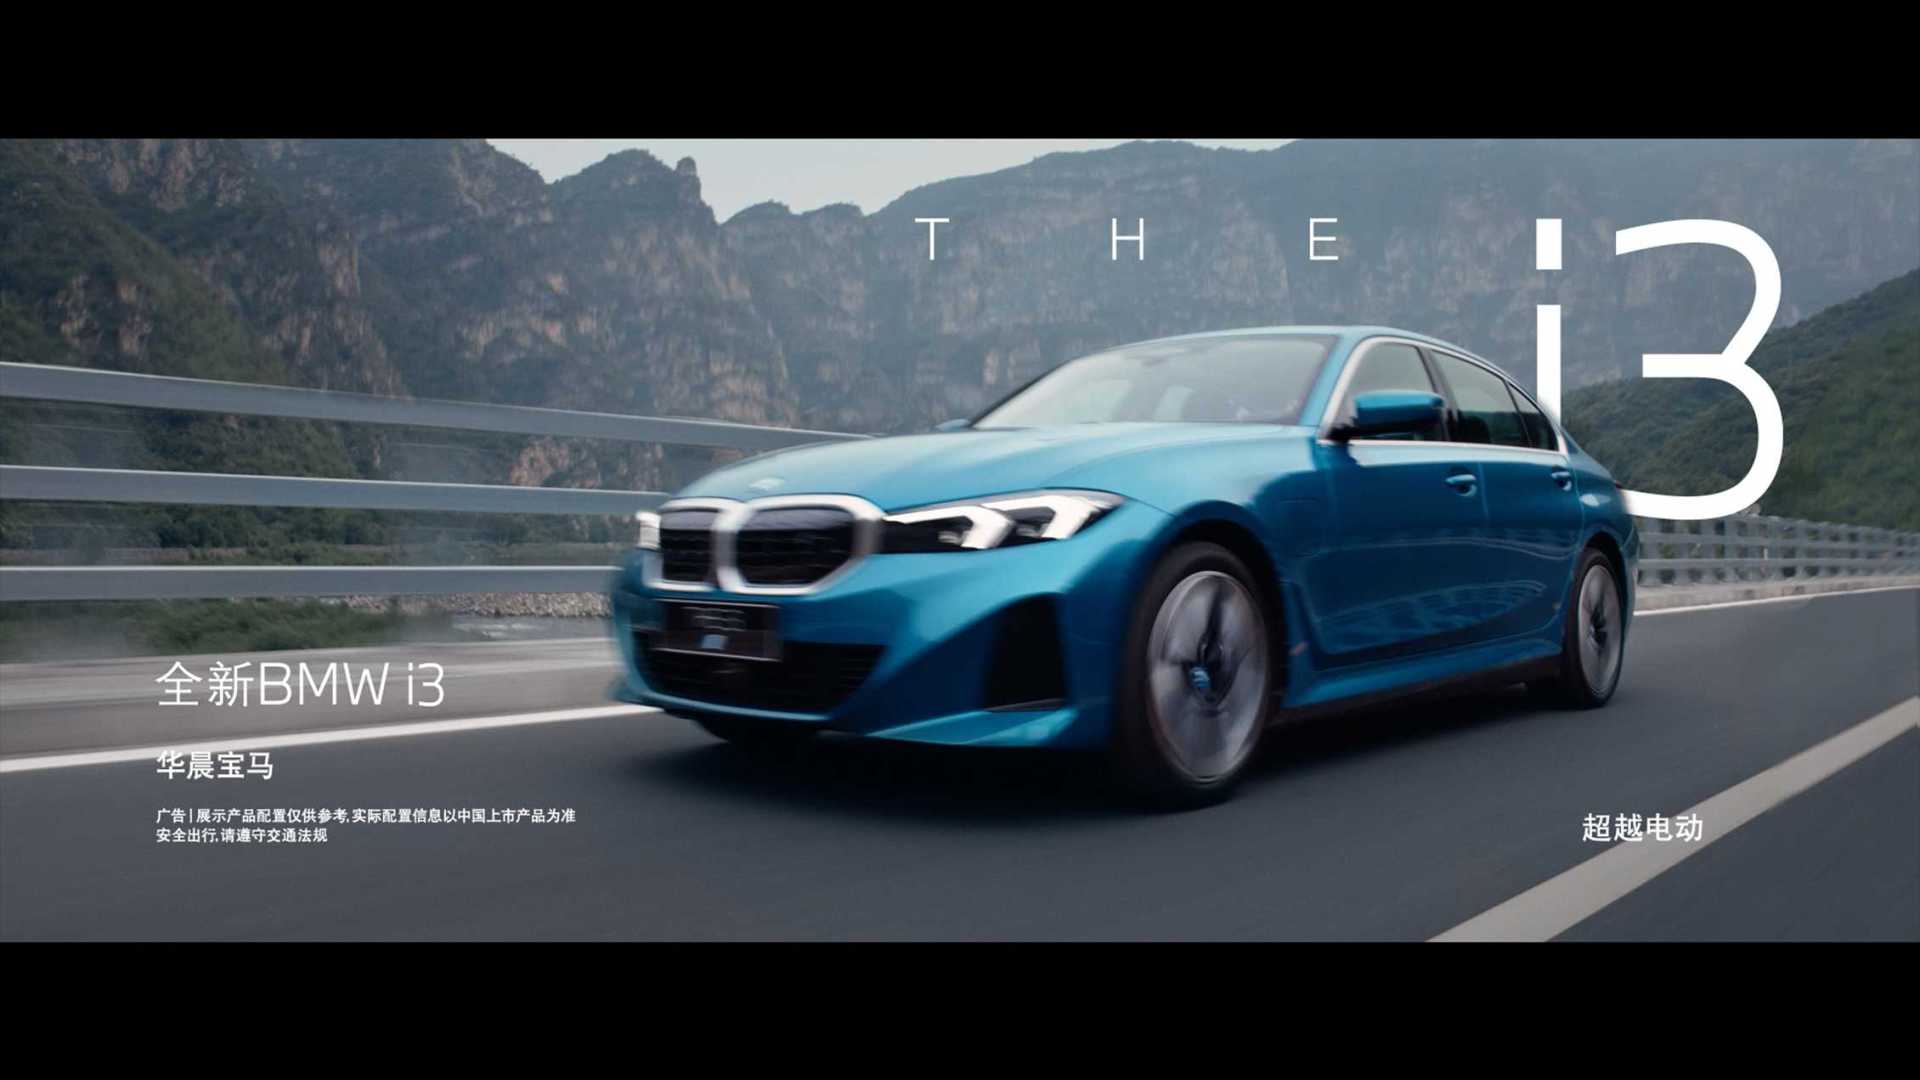 全新 BMW i3 《特 别 企 划》